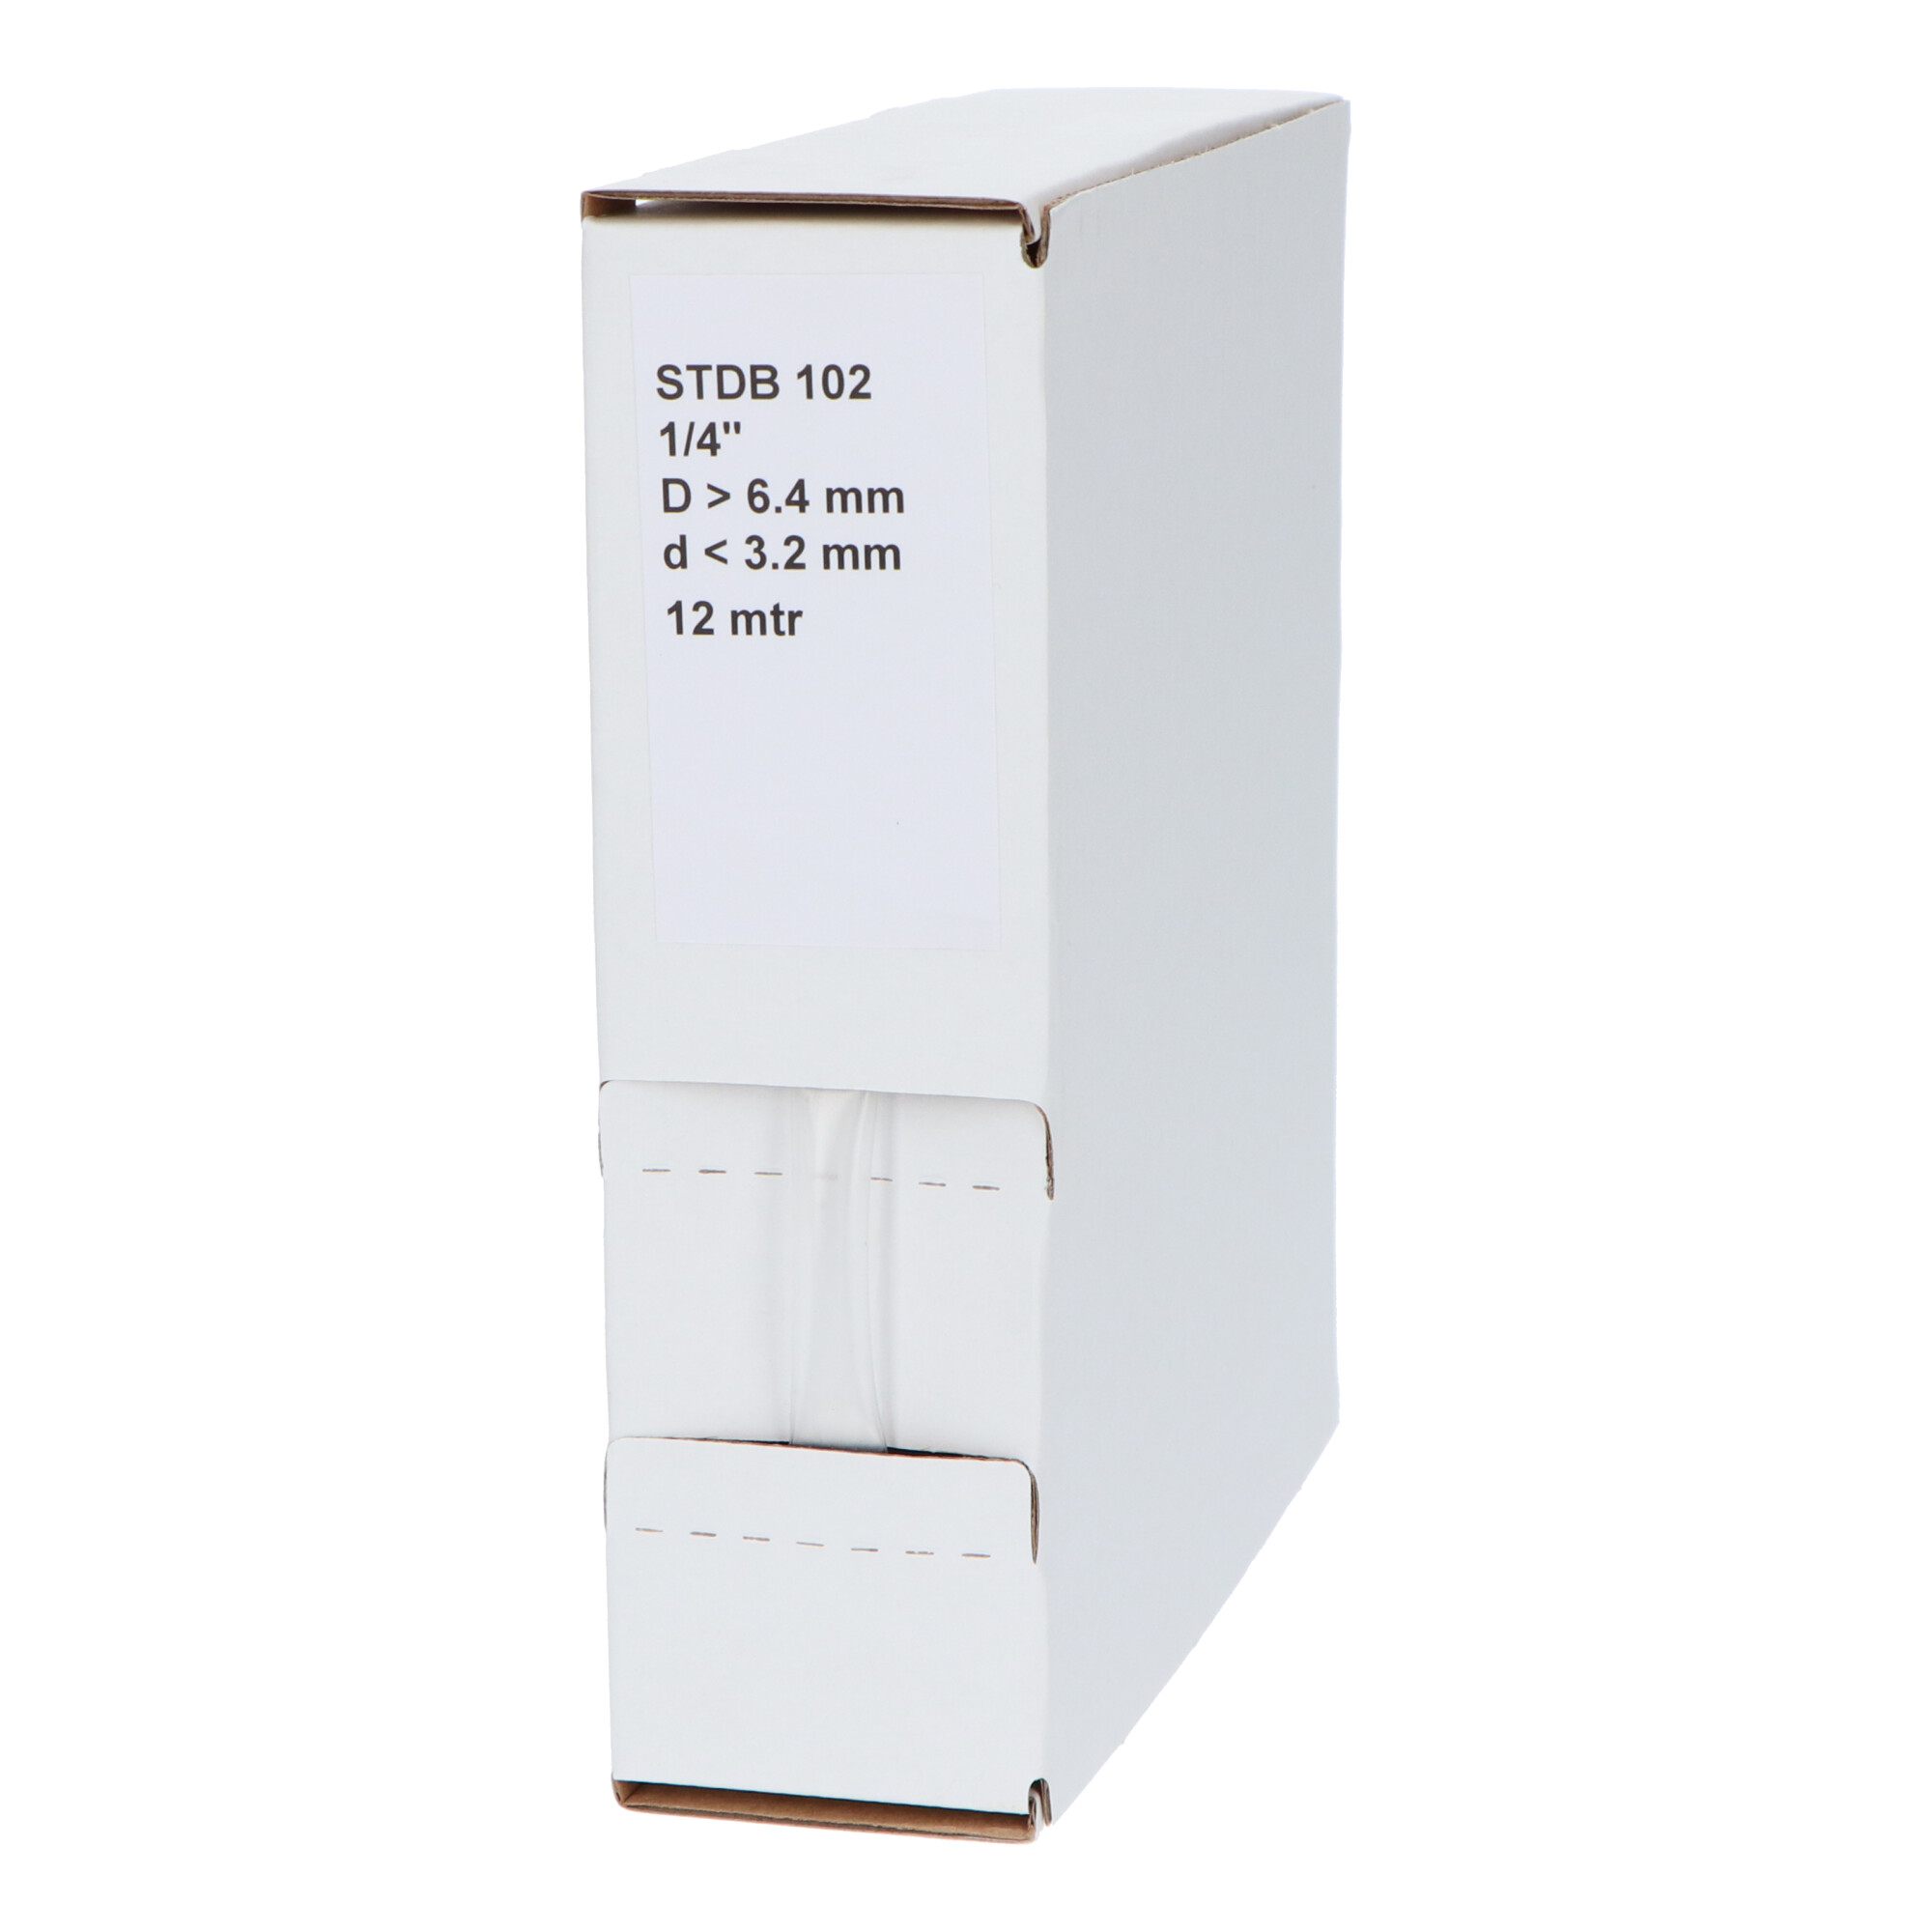 29-22009510G STDB 102 Krimpkous STDB 102 | 2:1 in dispenser box